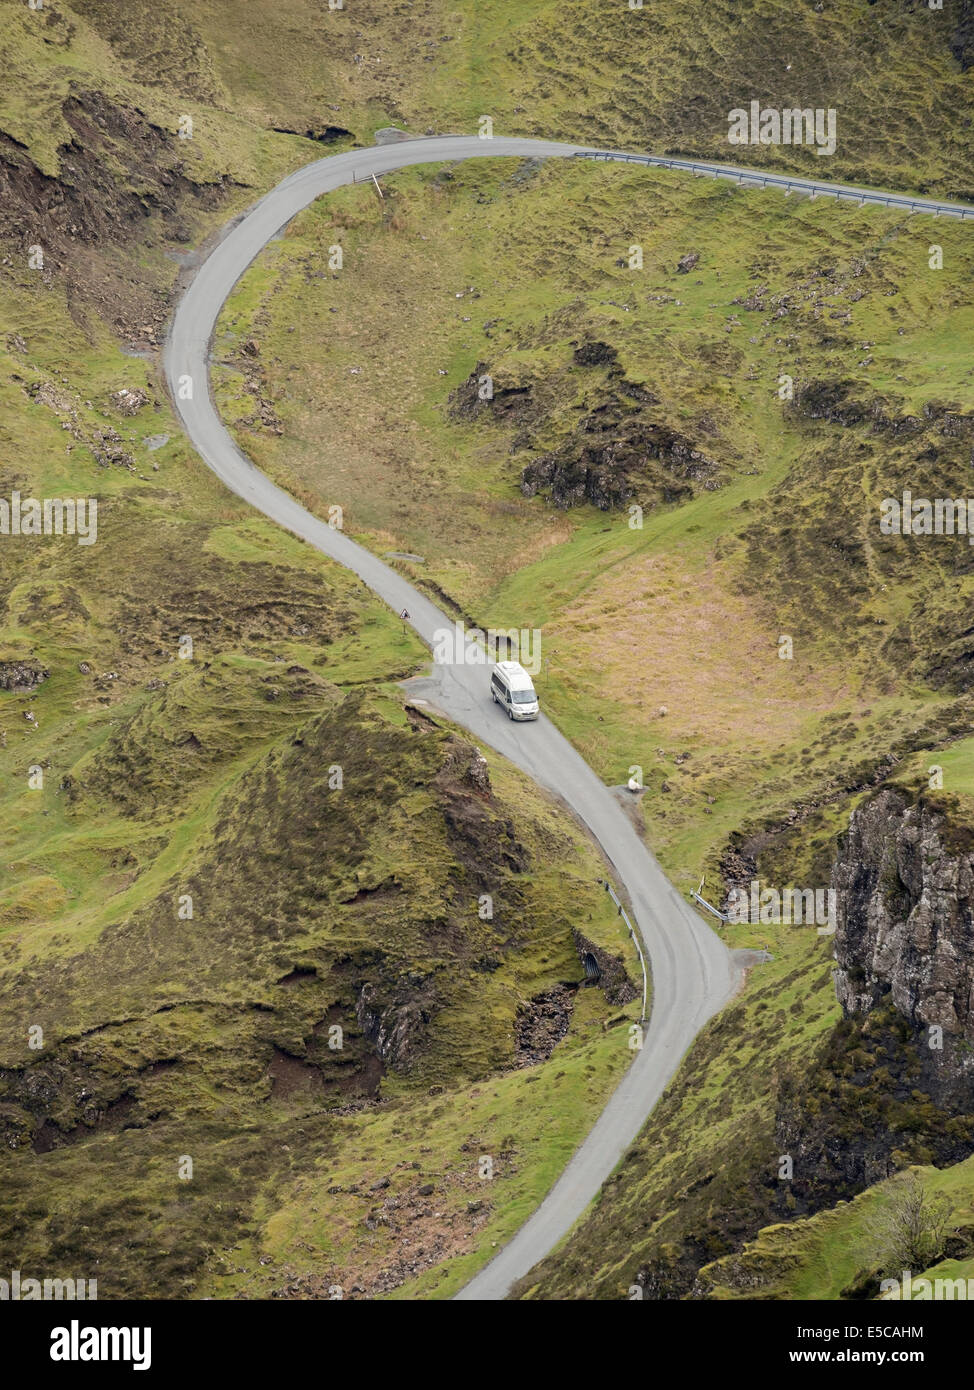 Auf kleinen Wohnmobil auf steilen, gewundenen, einzelne Titel Mountain Road, trotternish, Isle of Skye, Schottland, Großbritannien Stockfoto